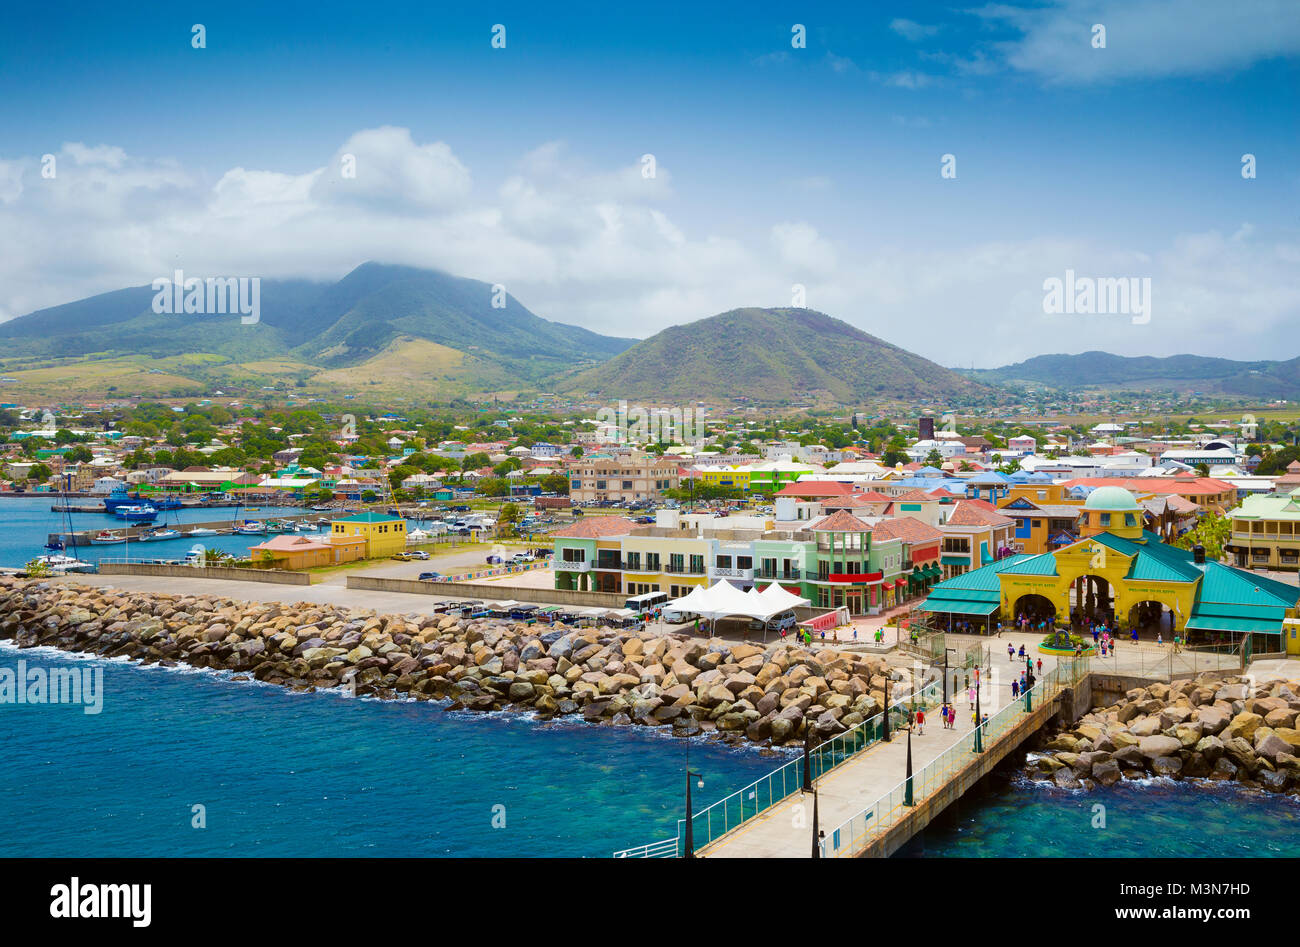 La ville de Port Zante à Basseterre, Saint Kitts et Nevis Banque D'Images